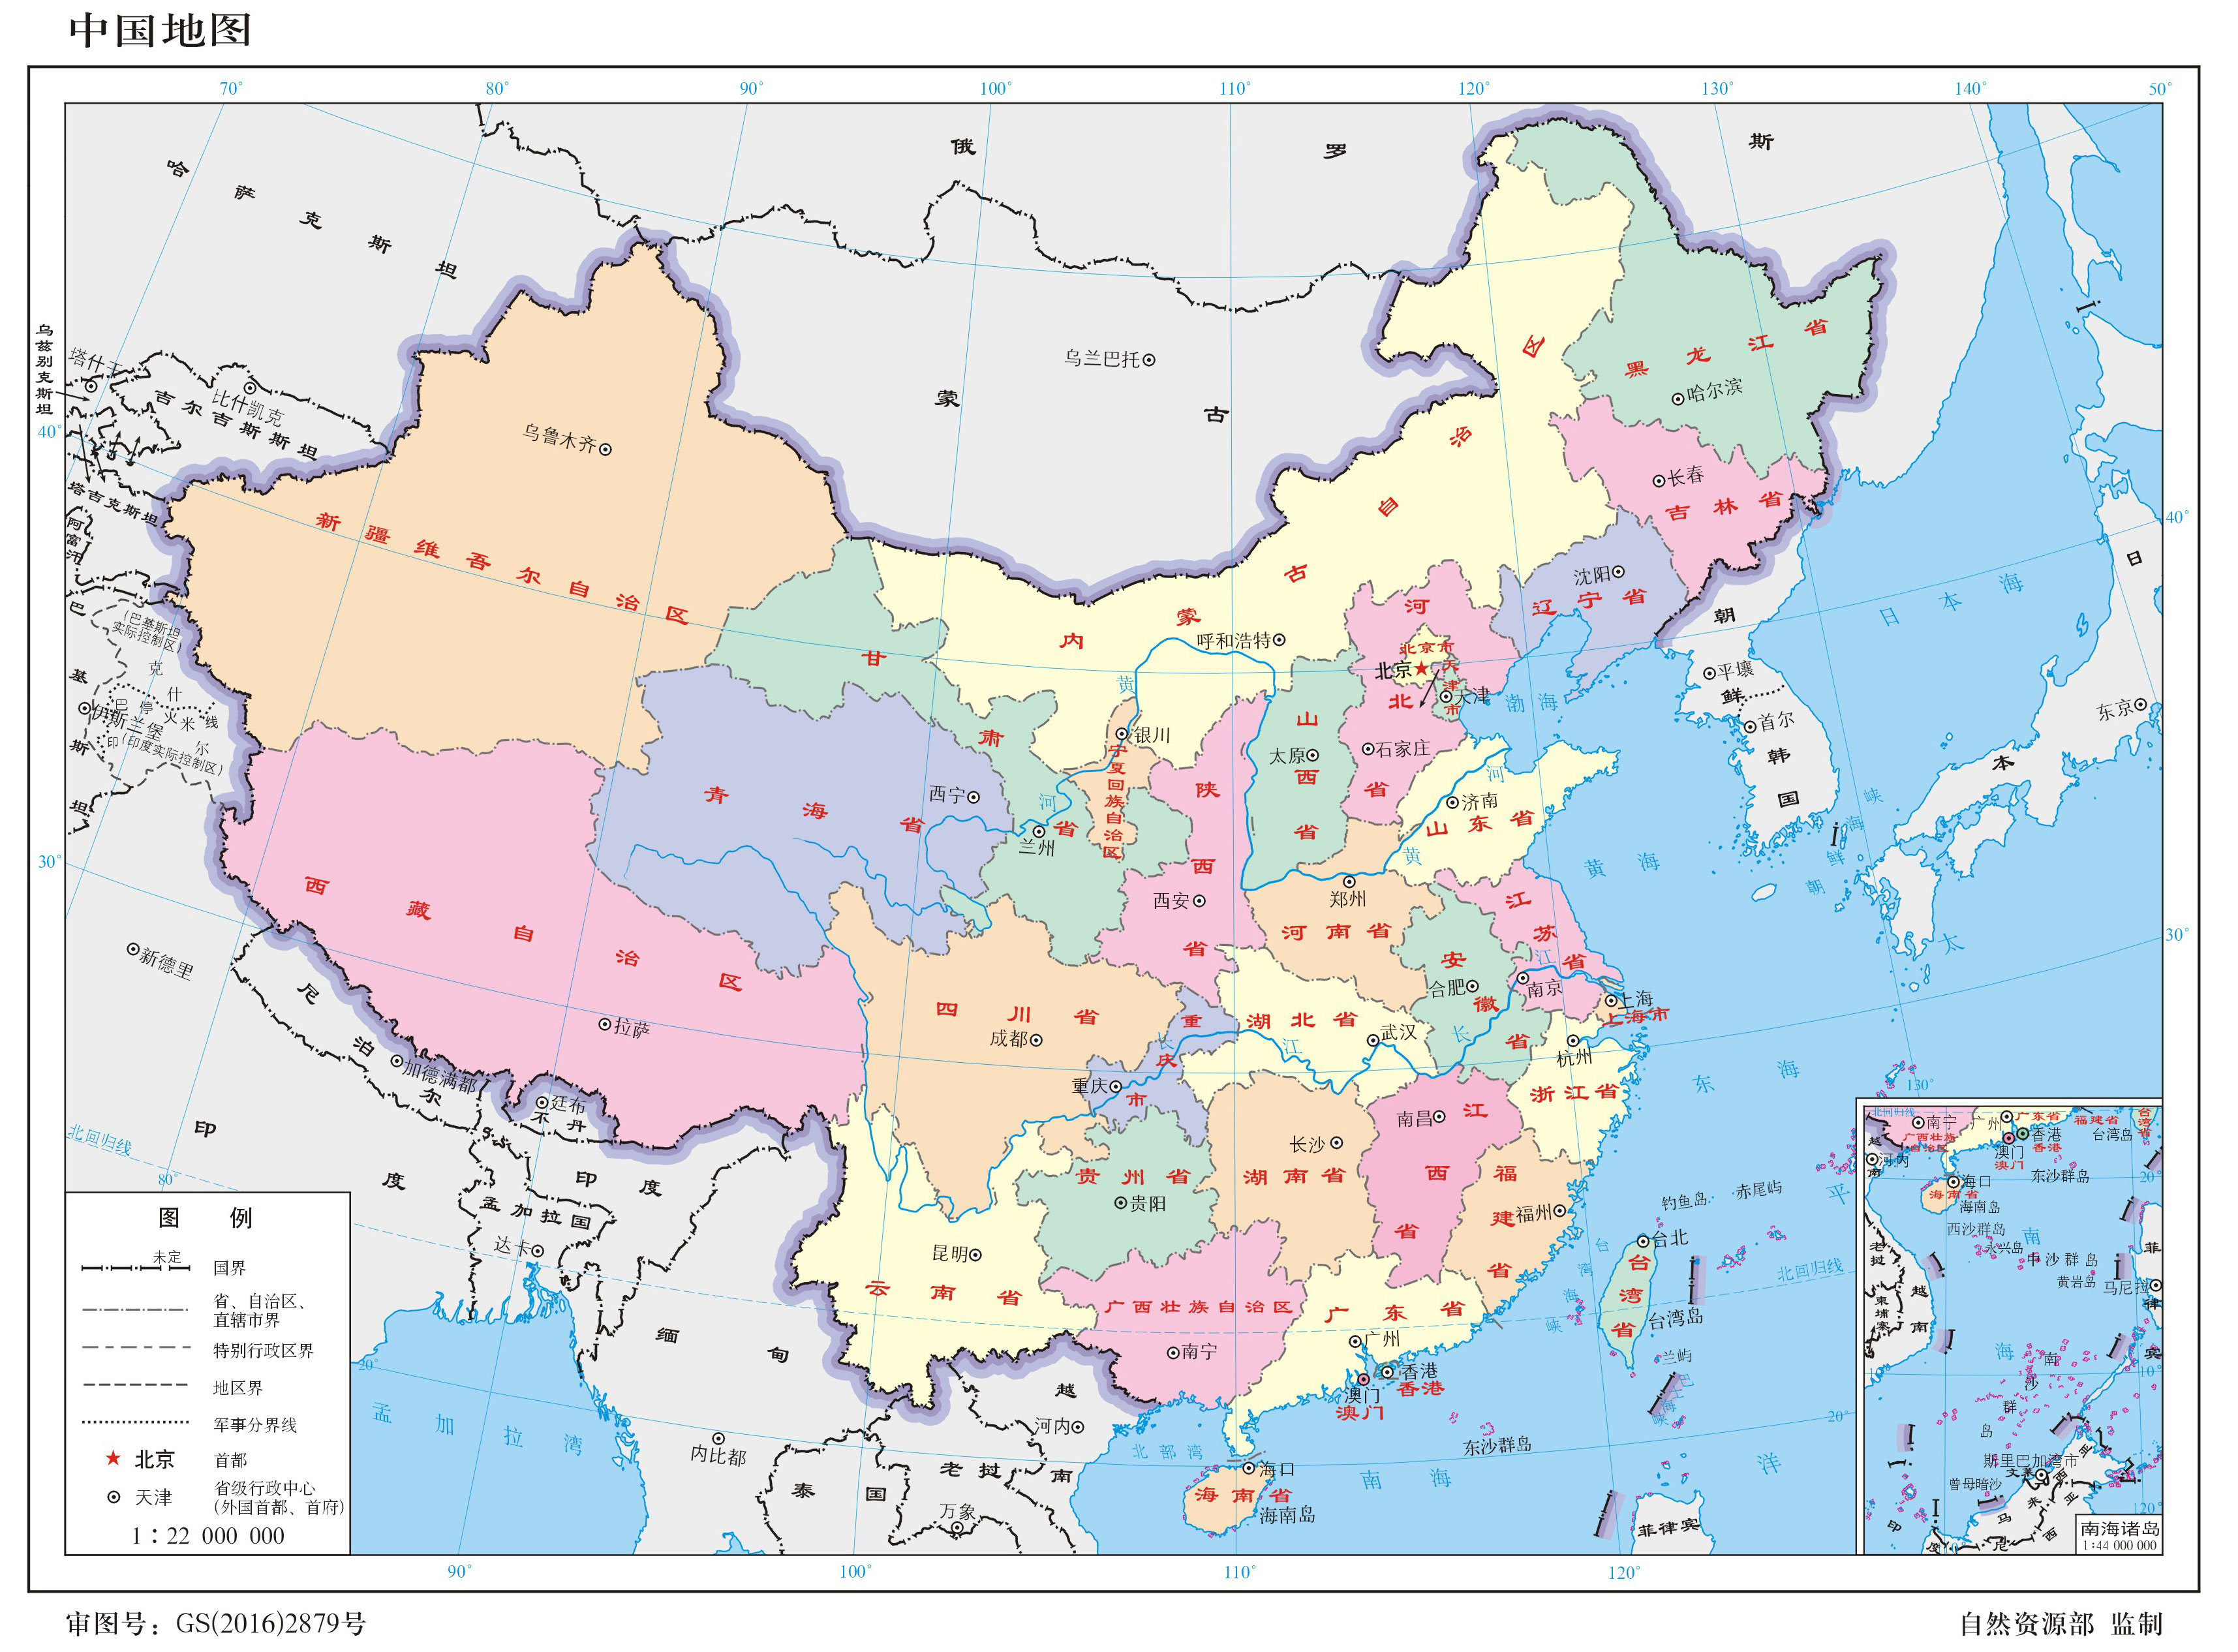 中国地图风景概括旅游旅行矢量素材免费下载 - 觅知网